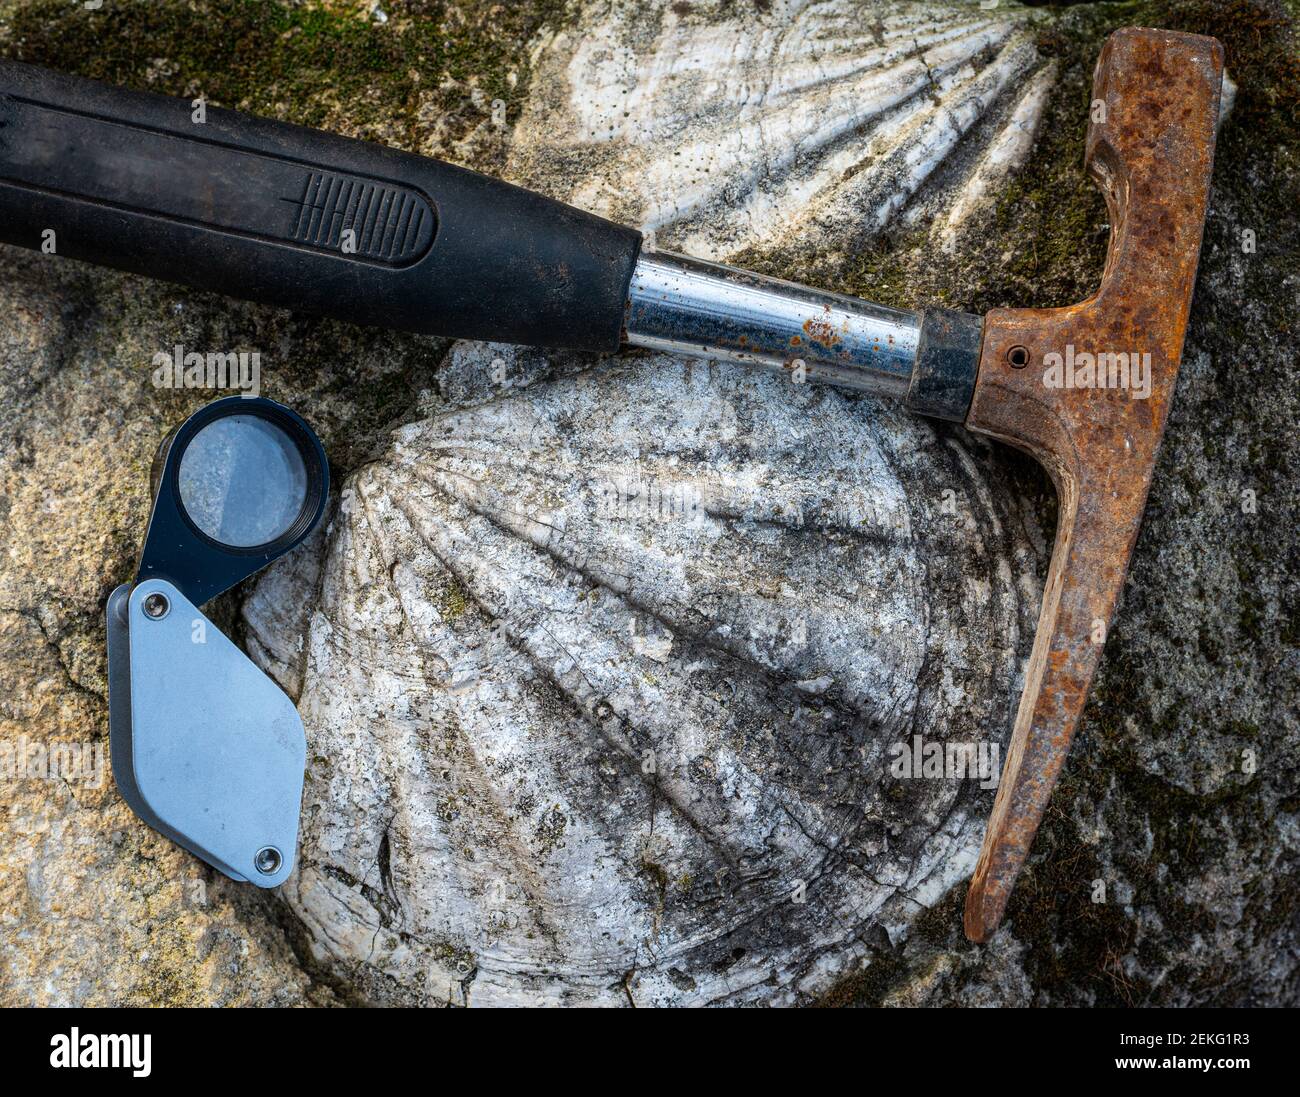 martillo geológico o pick de roca, con concha fósil en piedra caliza y lente de mano. Foto de stock